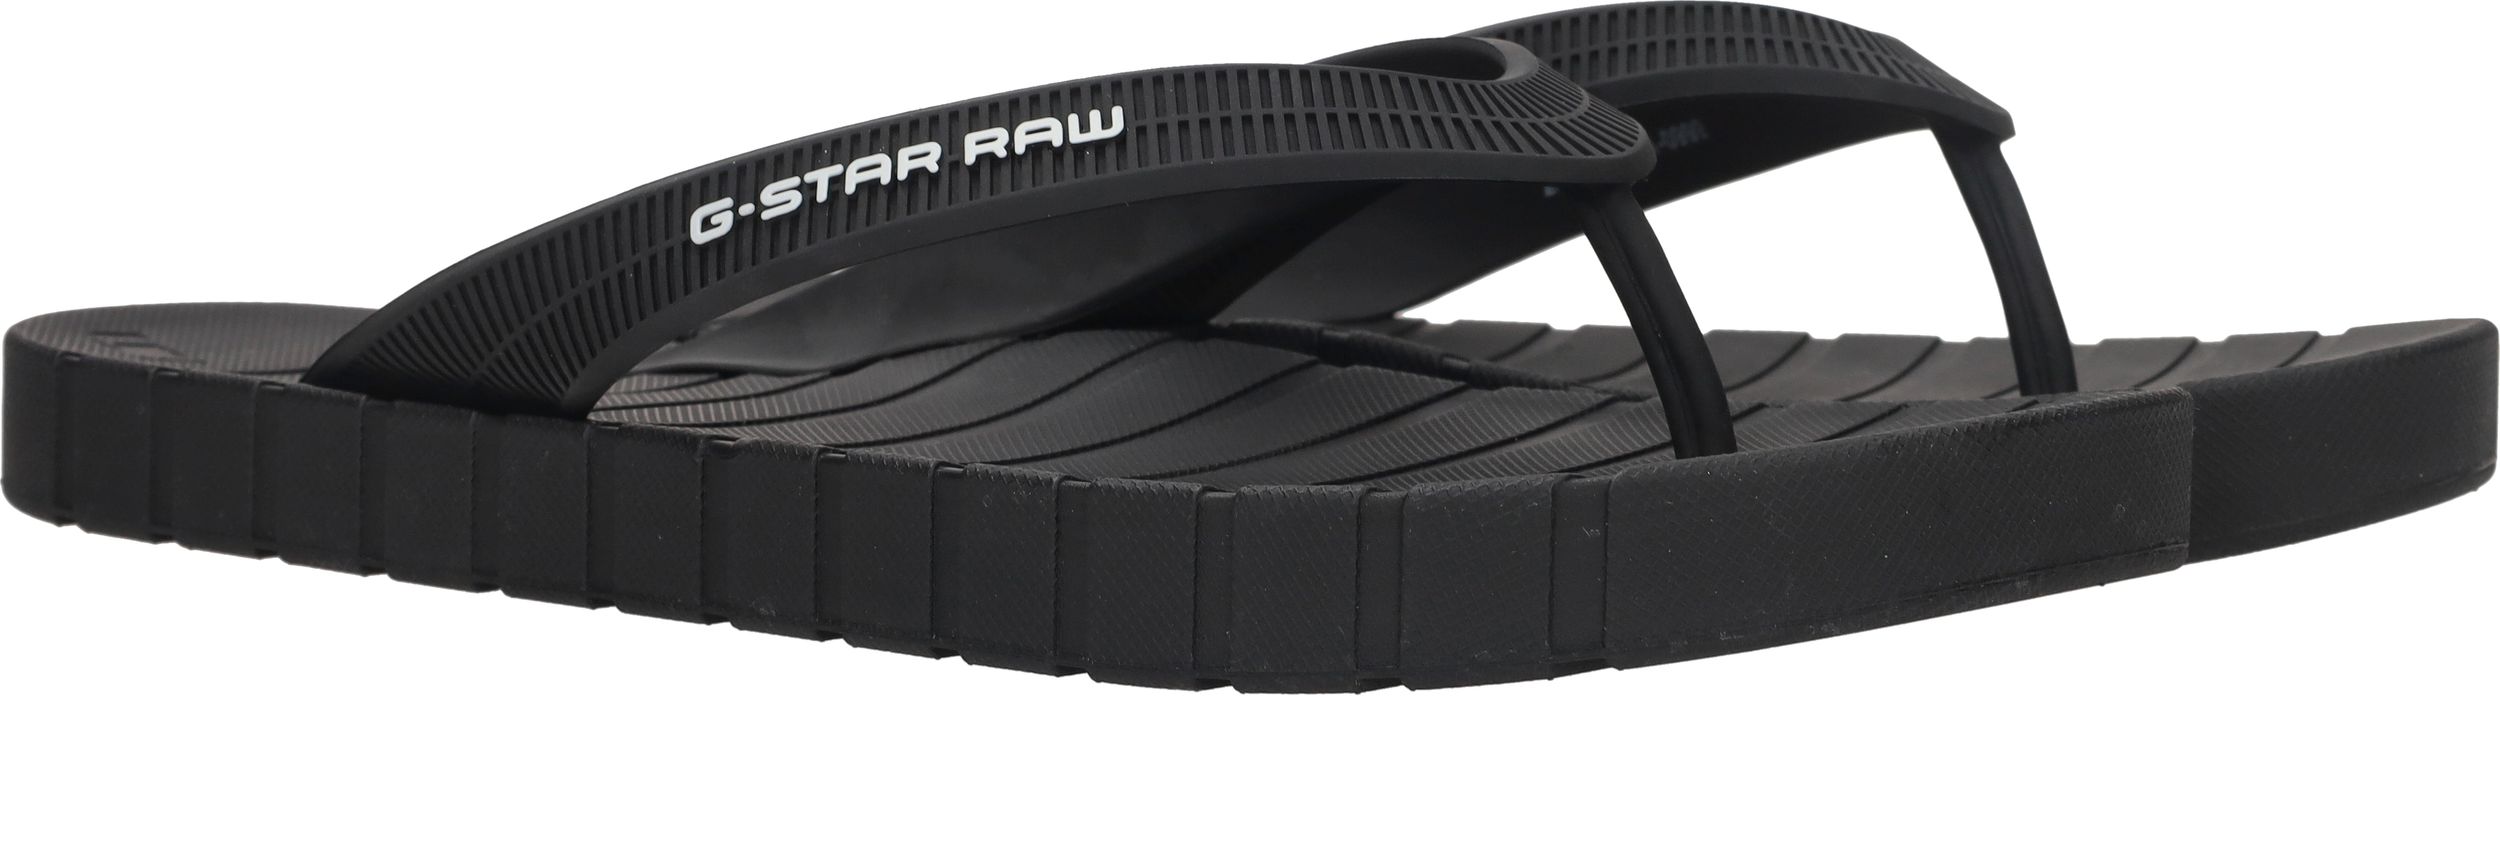 Durlinger G-Star Raw slipper